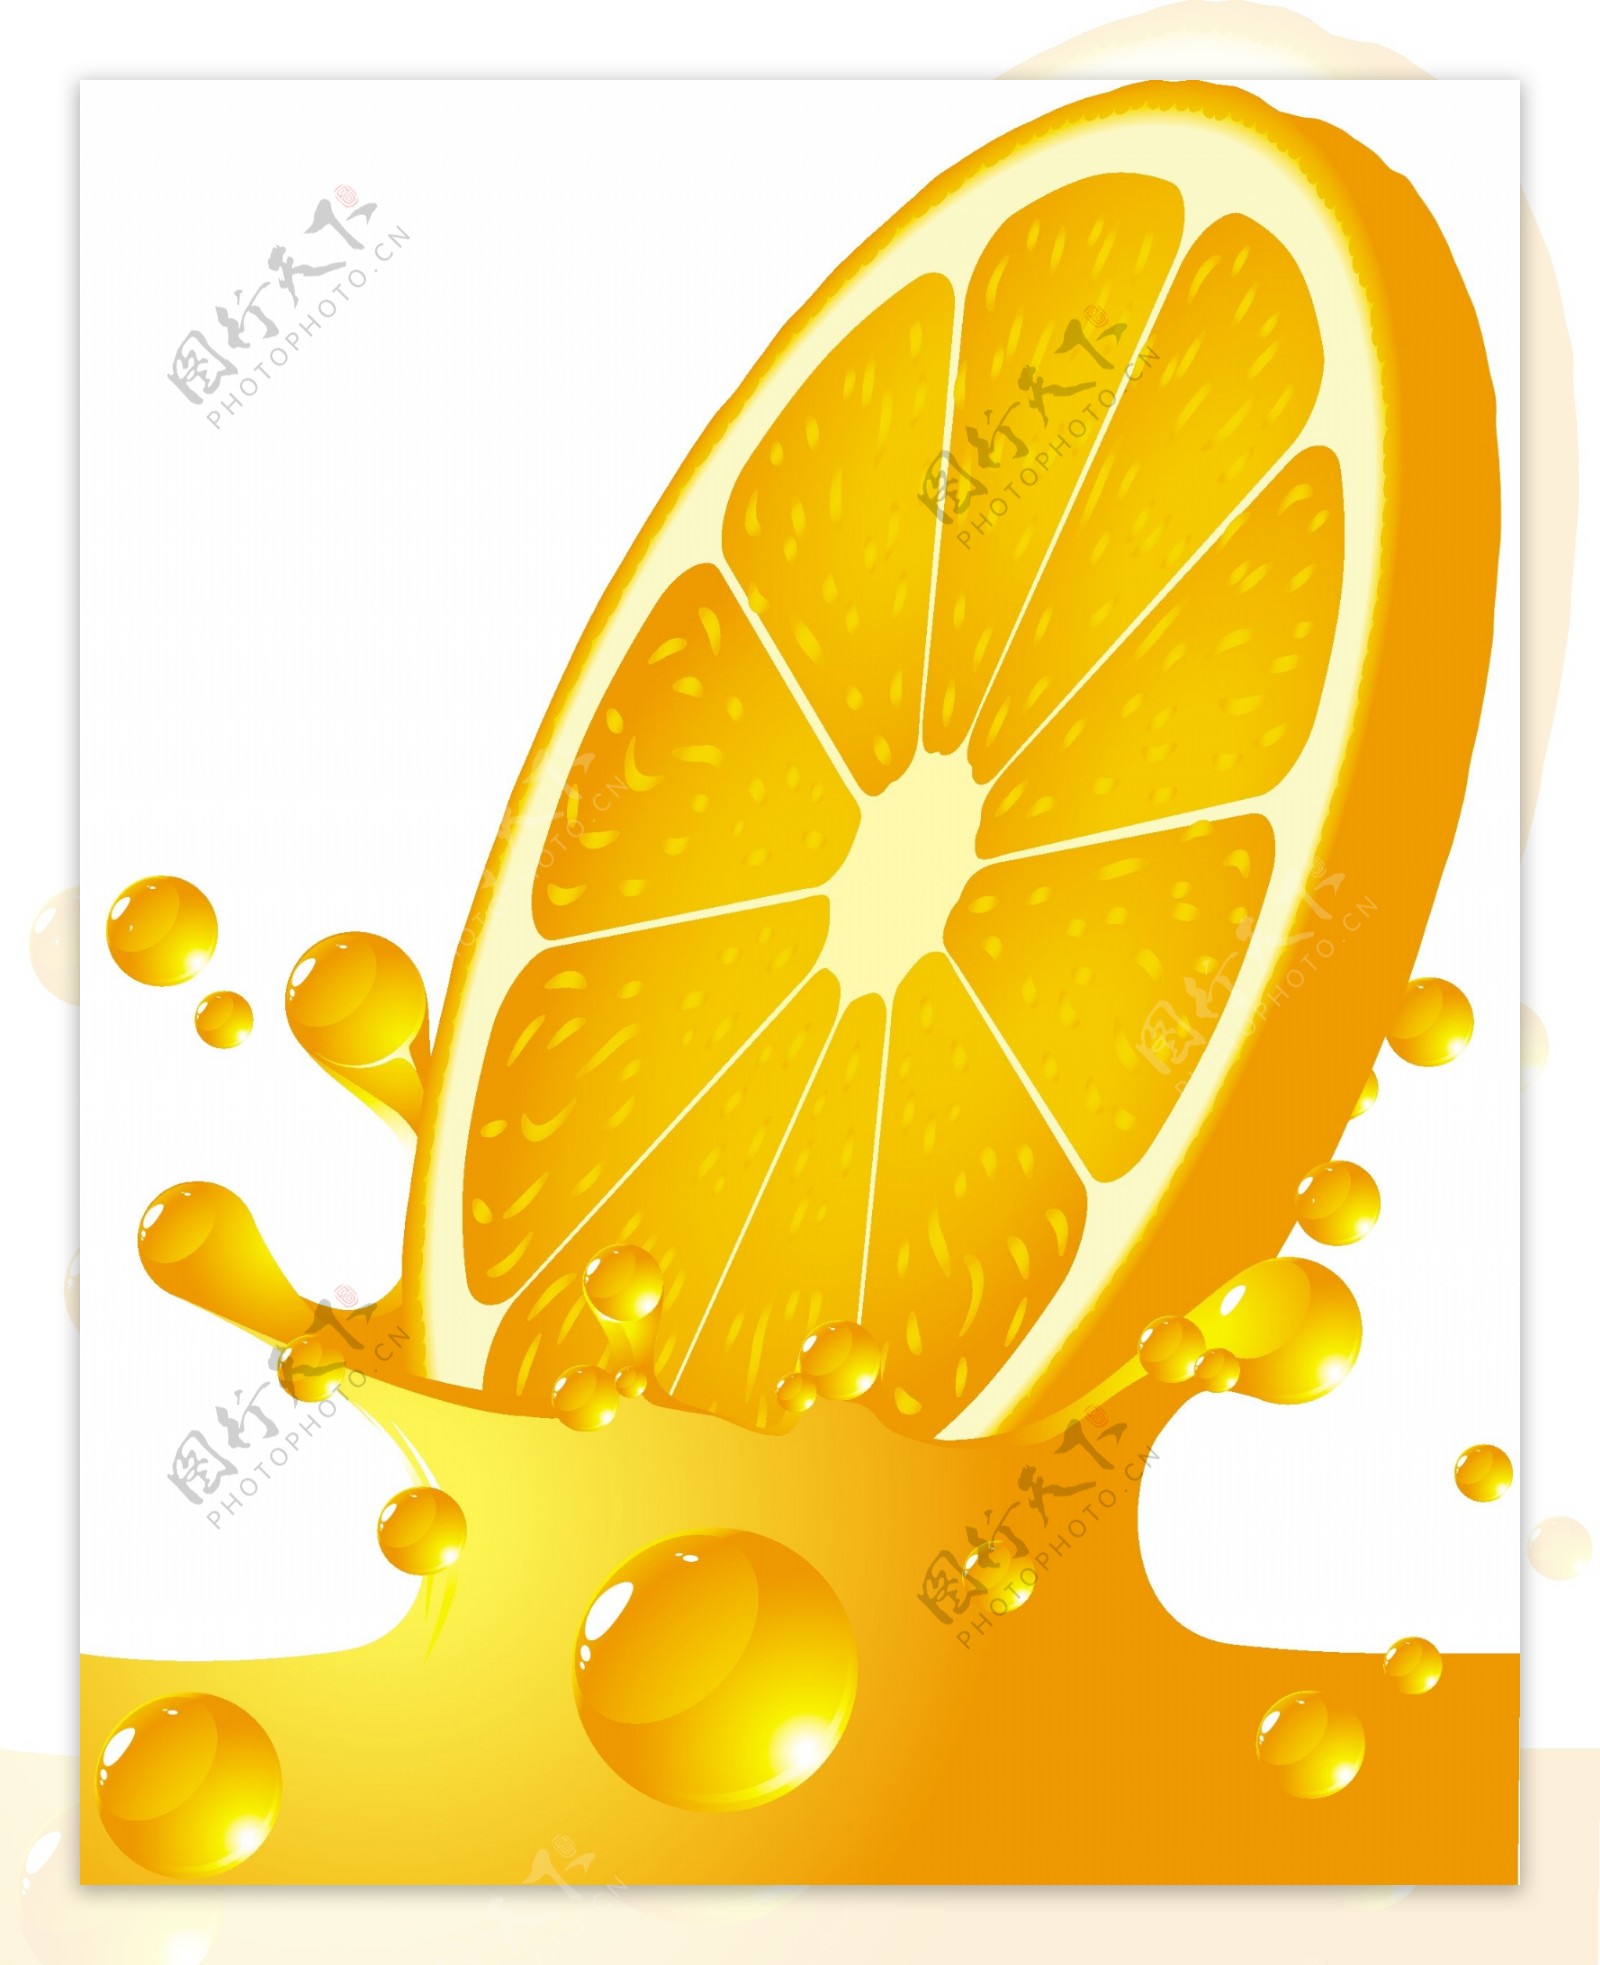 橙汁饮料瓶向量